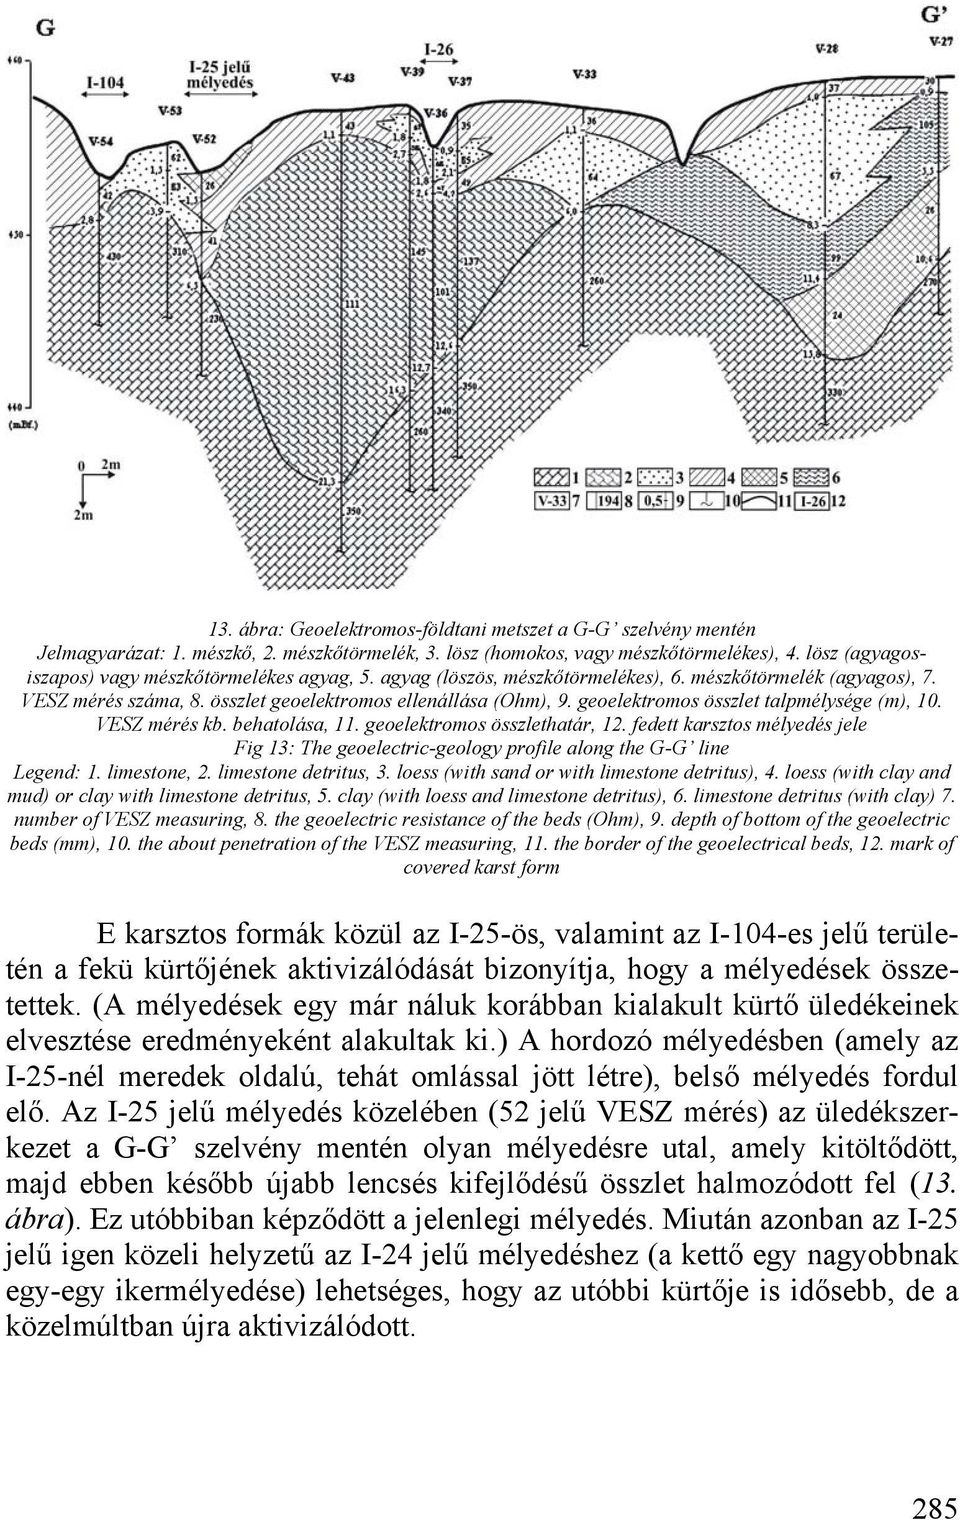 geoelektromos összlet talpmélysége (m), 10. VESZ mérés kb. behatolása, 11. geoelektromos összlethatár, 12.